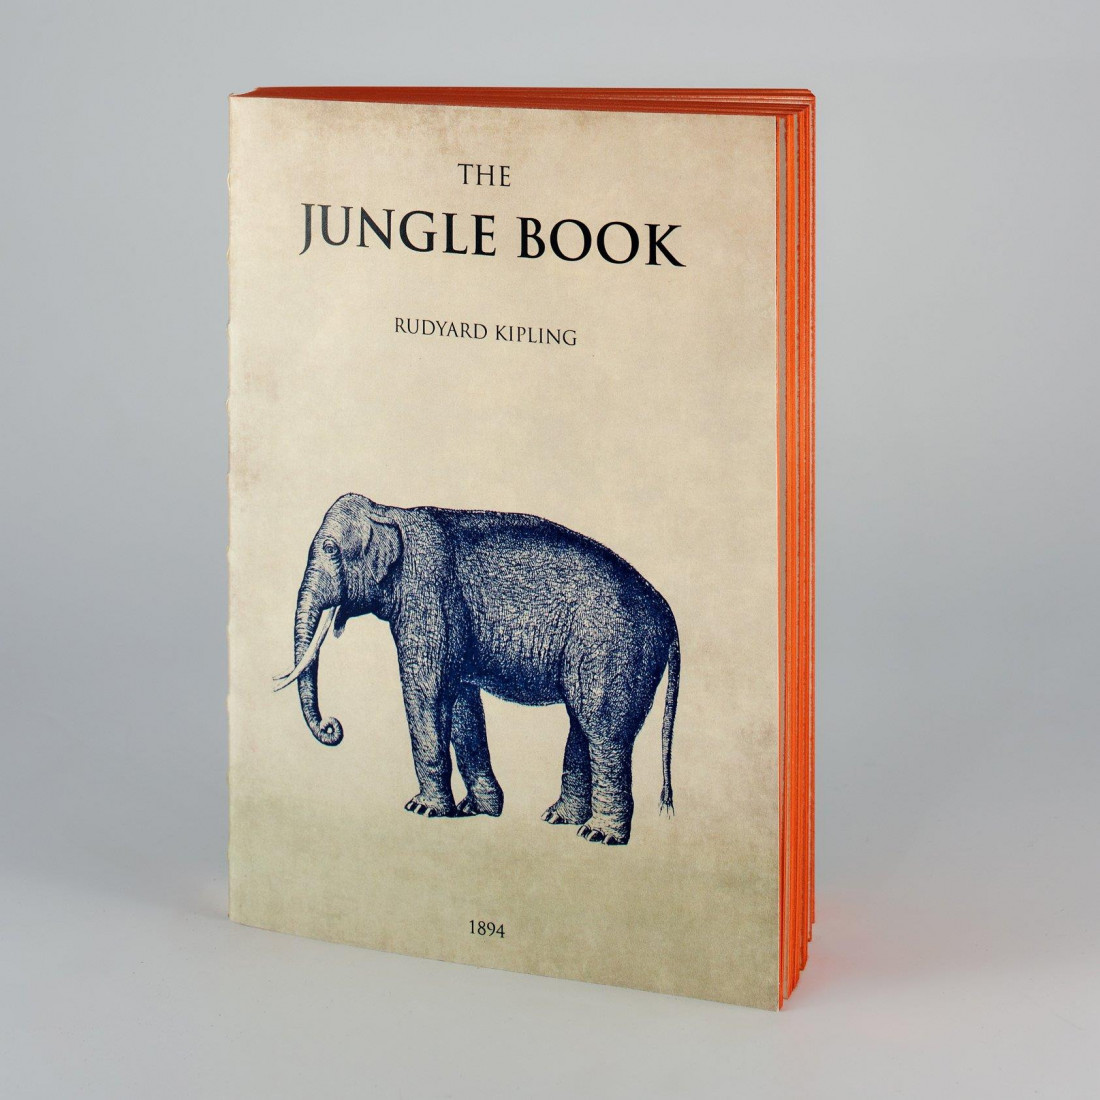 ANTIQUE NOTEBOOK The Jungle Book LIBRI MUTI